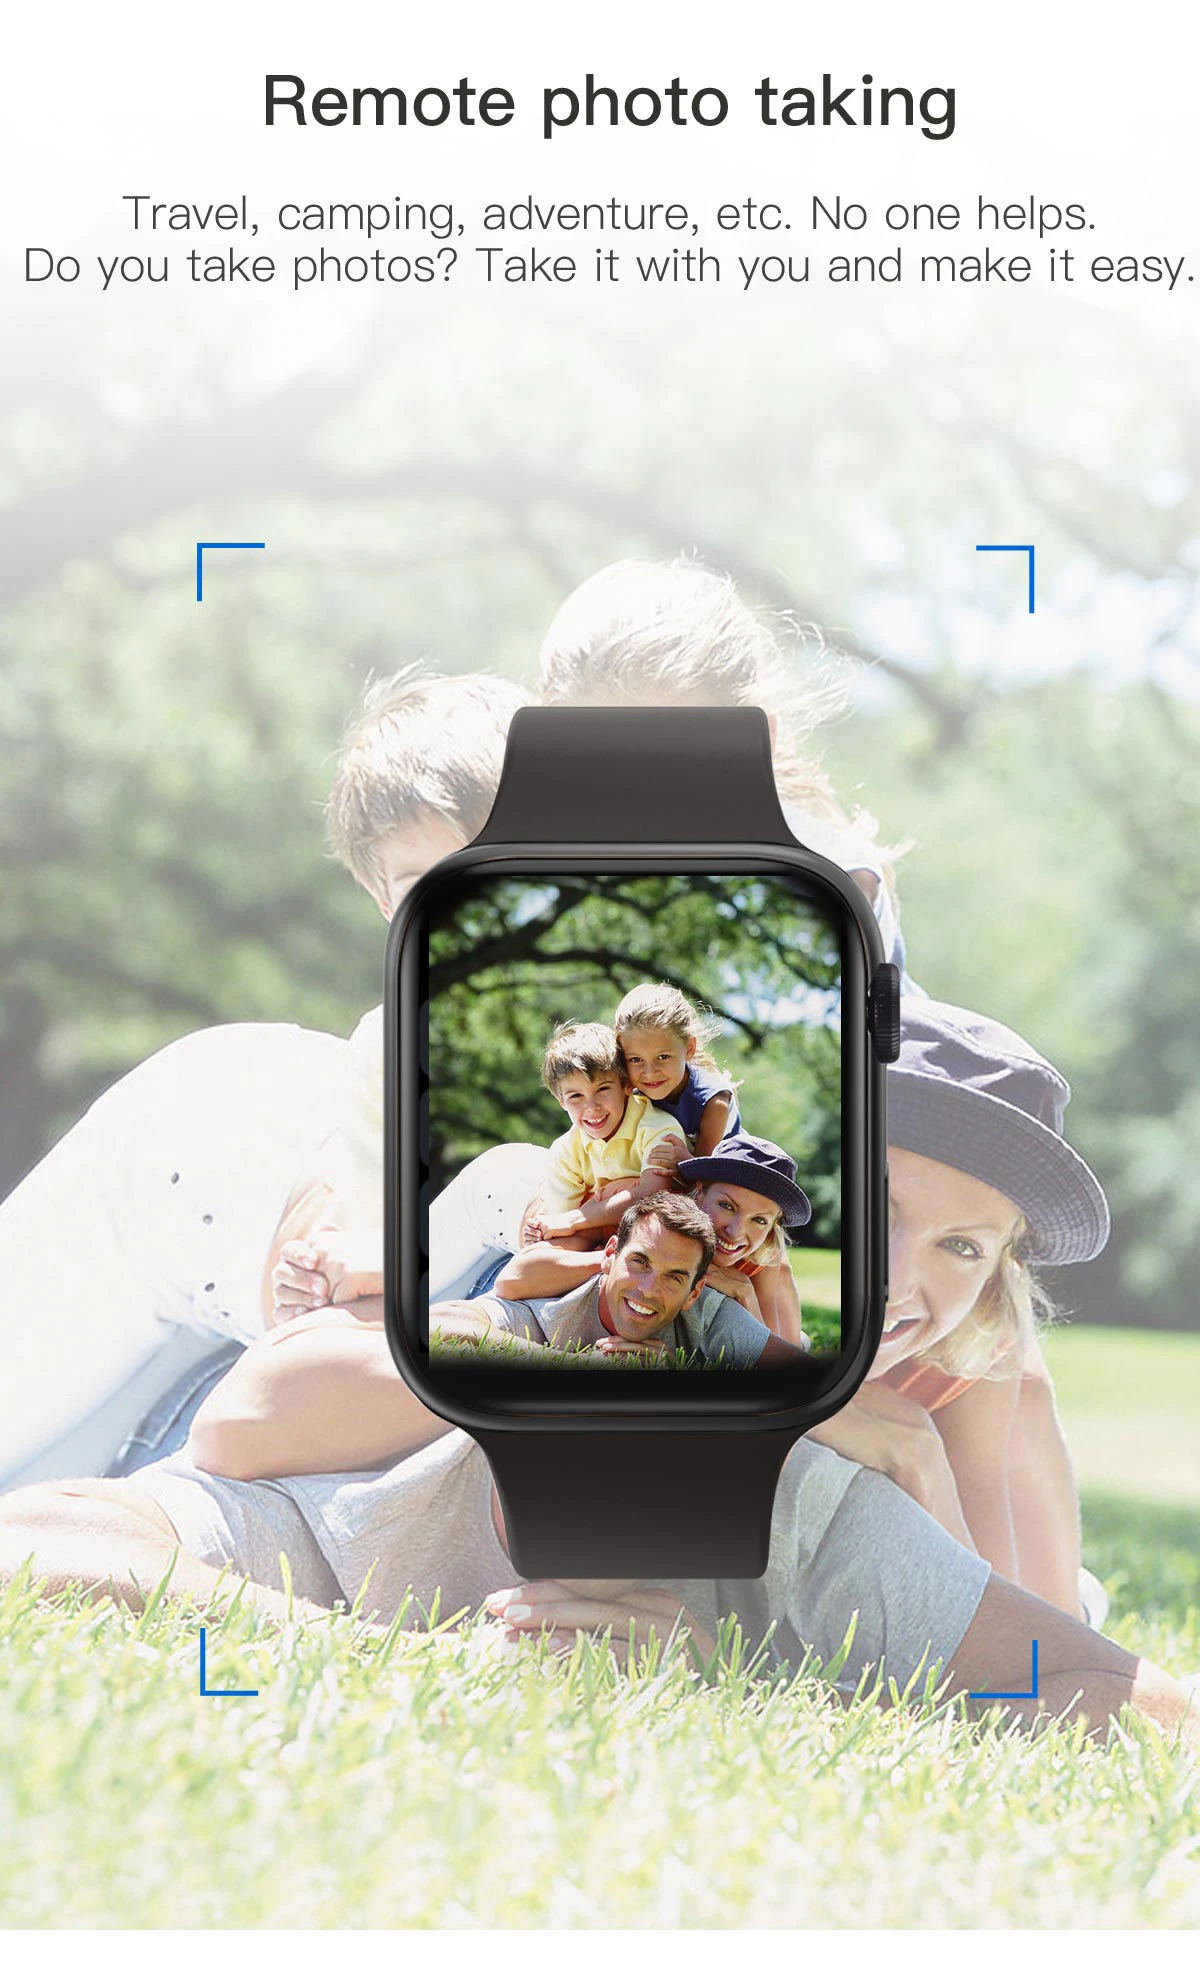 I7 Bluetooth Смарт-часы IWO 12 жизнь водонепроницаемый мониторинг сердечного ритма спортивный браслет умные часы с камерой для мужчин и женщин